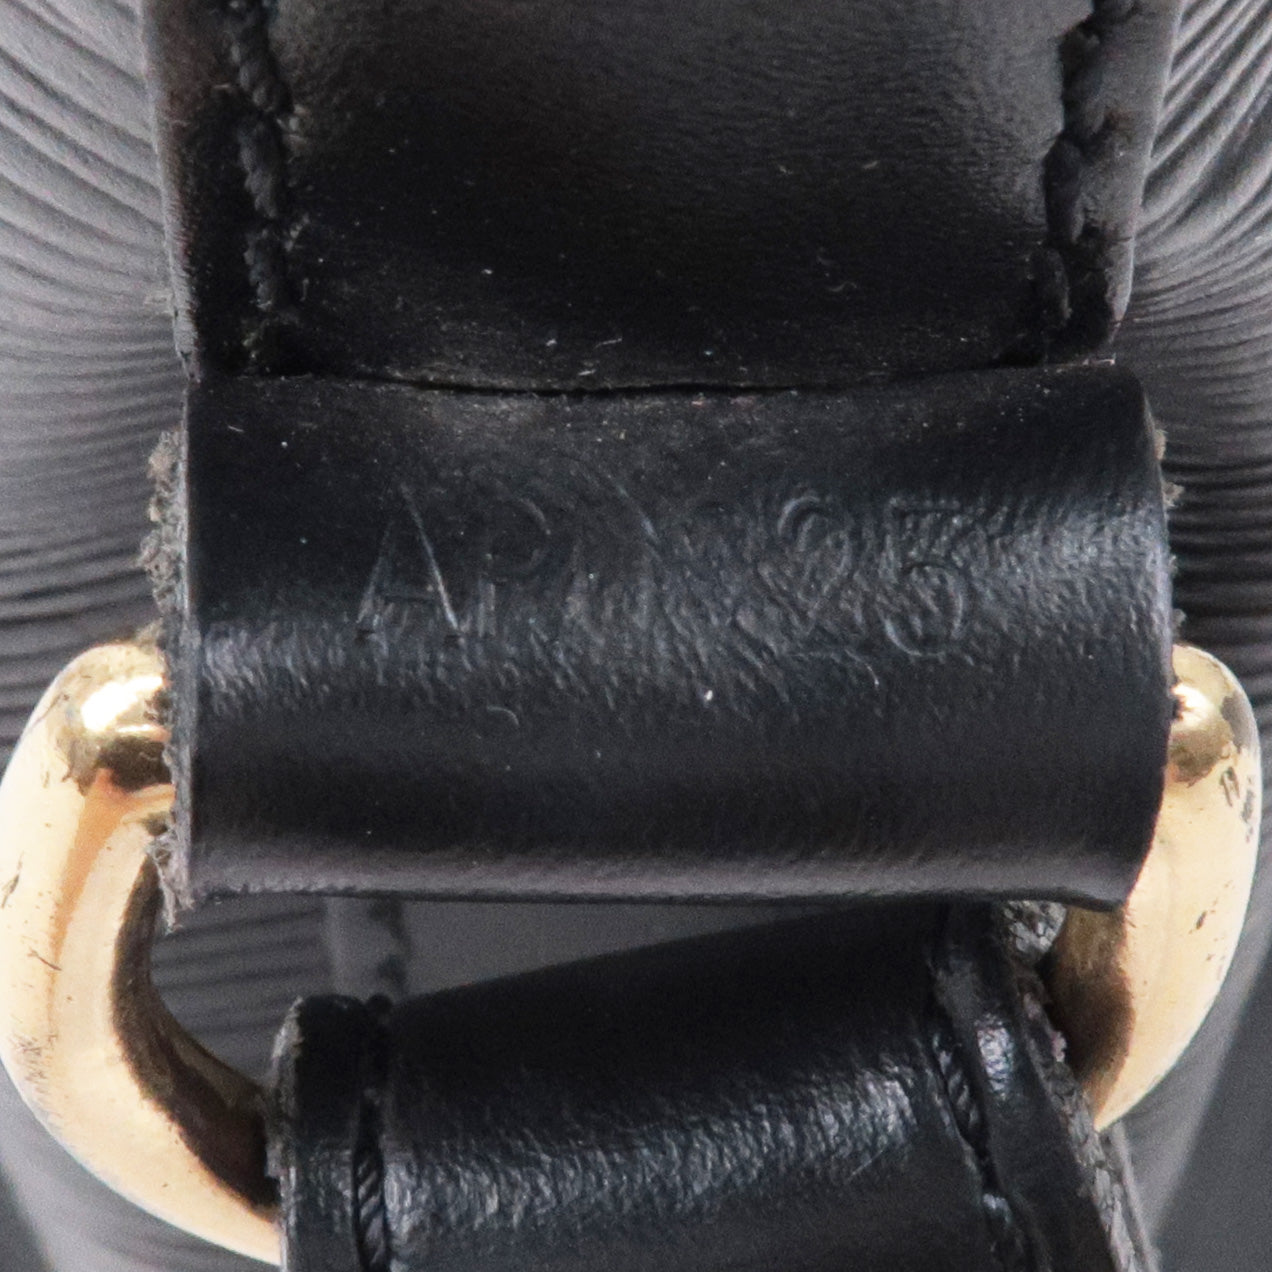 Louis Vuitton - Petit Noe Epi Leather Noir